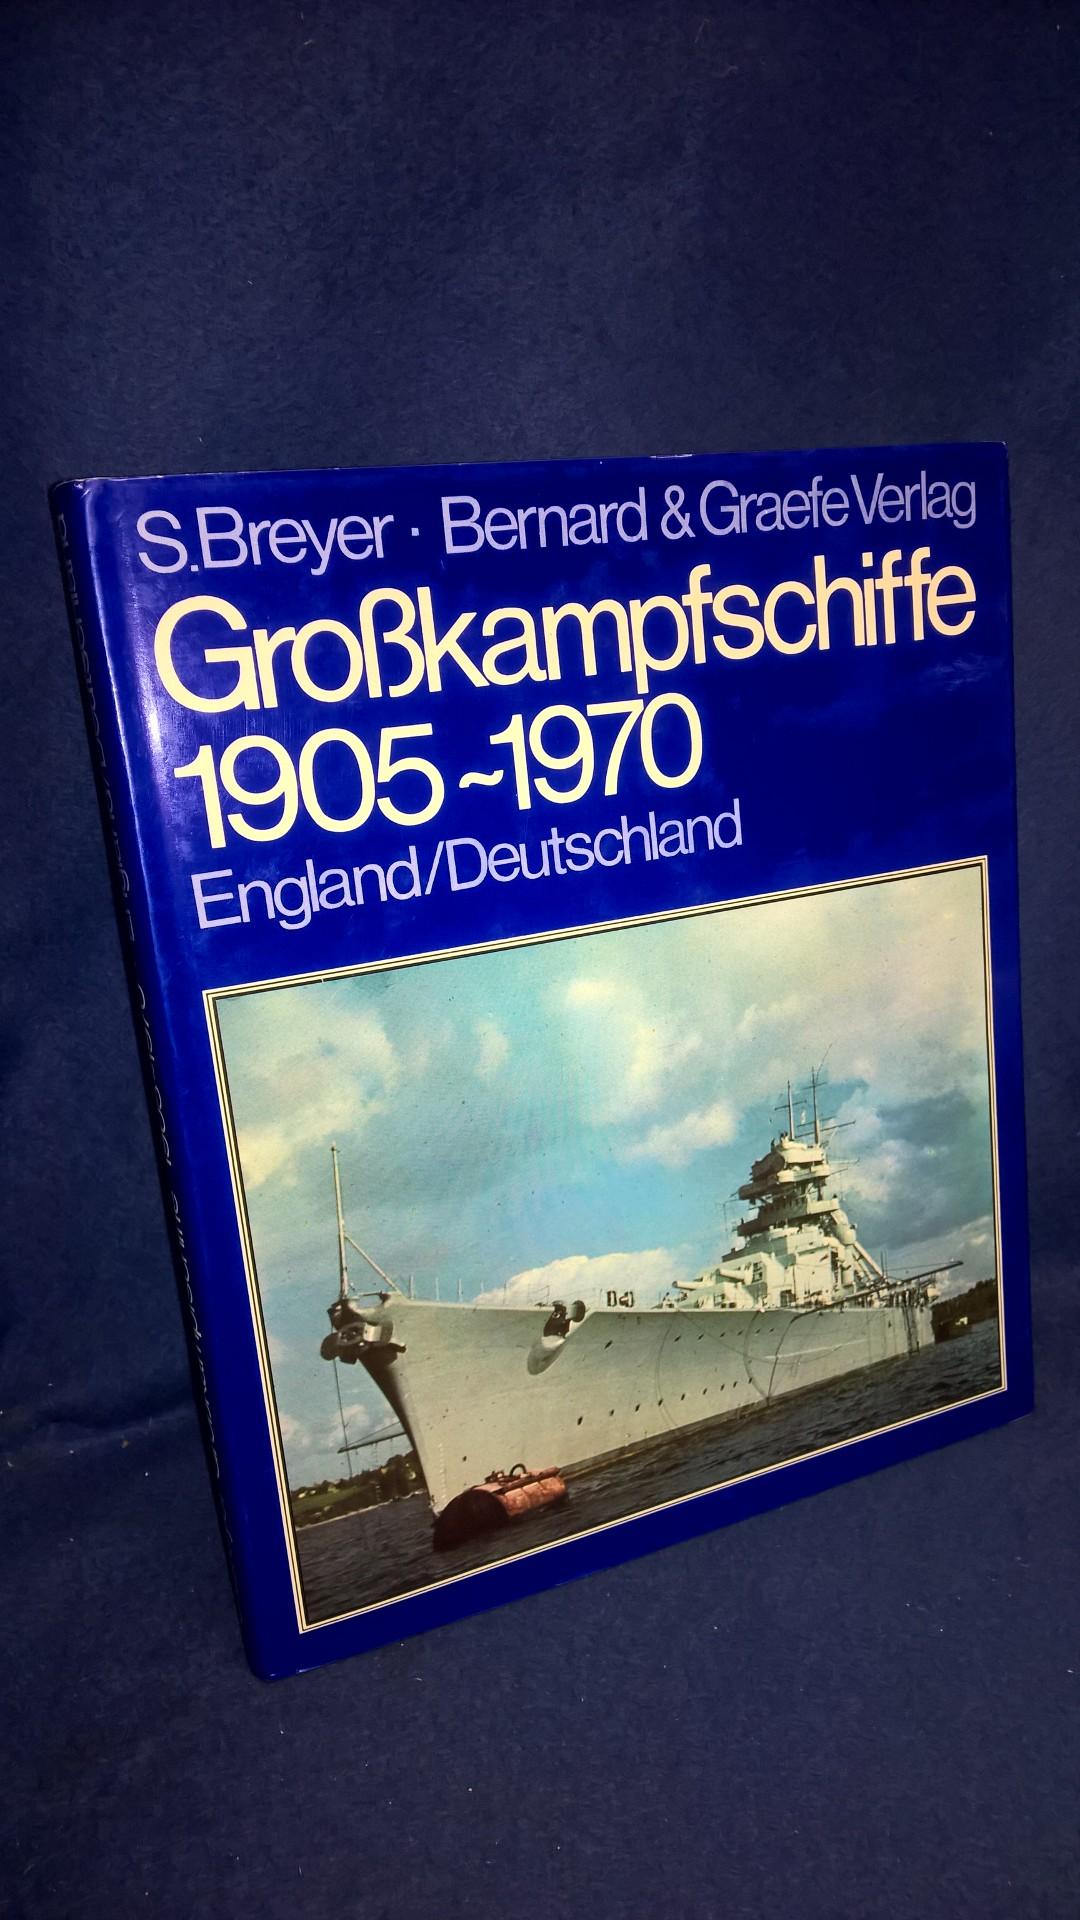 Grosskampfschiffe 1905-1970. Wehrtechnik im Bild Band 1: England/Deutschland.